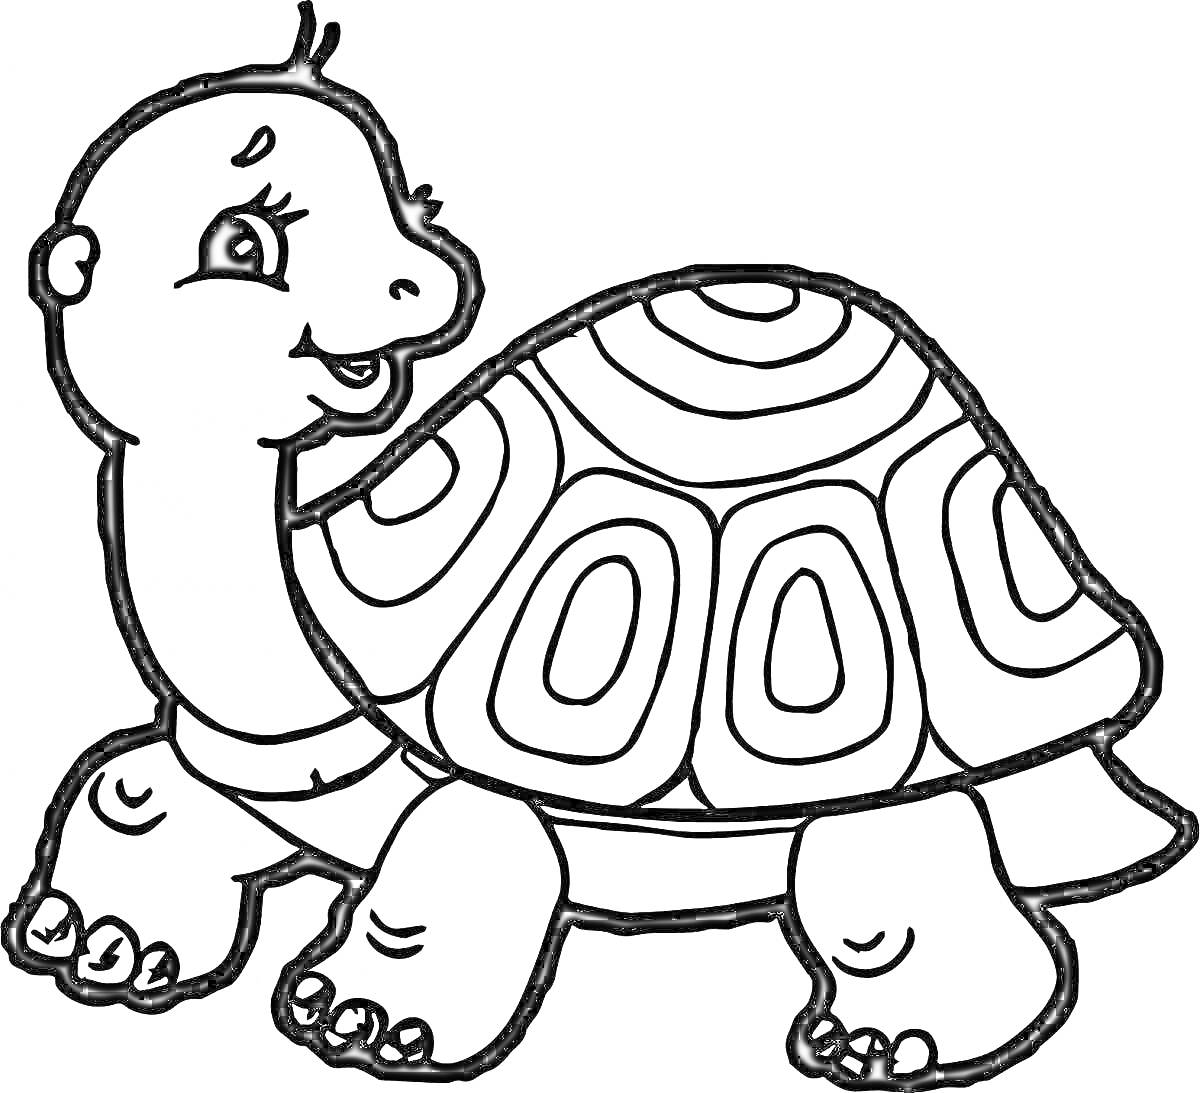 Раскраска Черепаха с узором на панцире и улыбающимся лицом